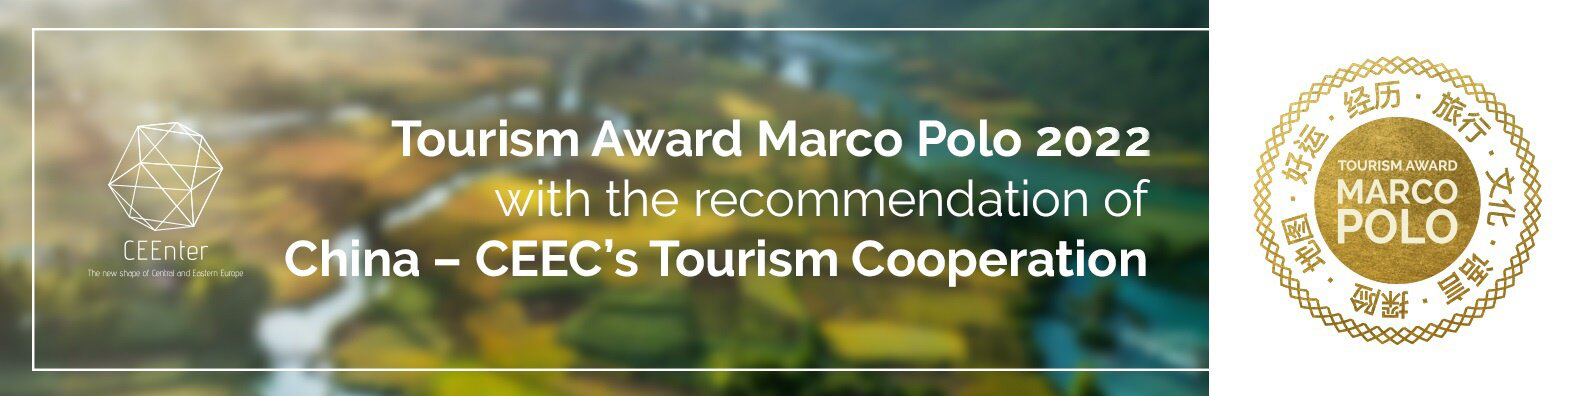 Vítězové 4. ročníku Tourism Award Marco Polo